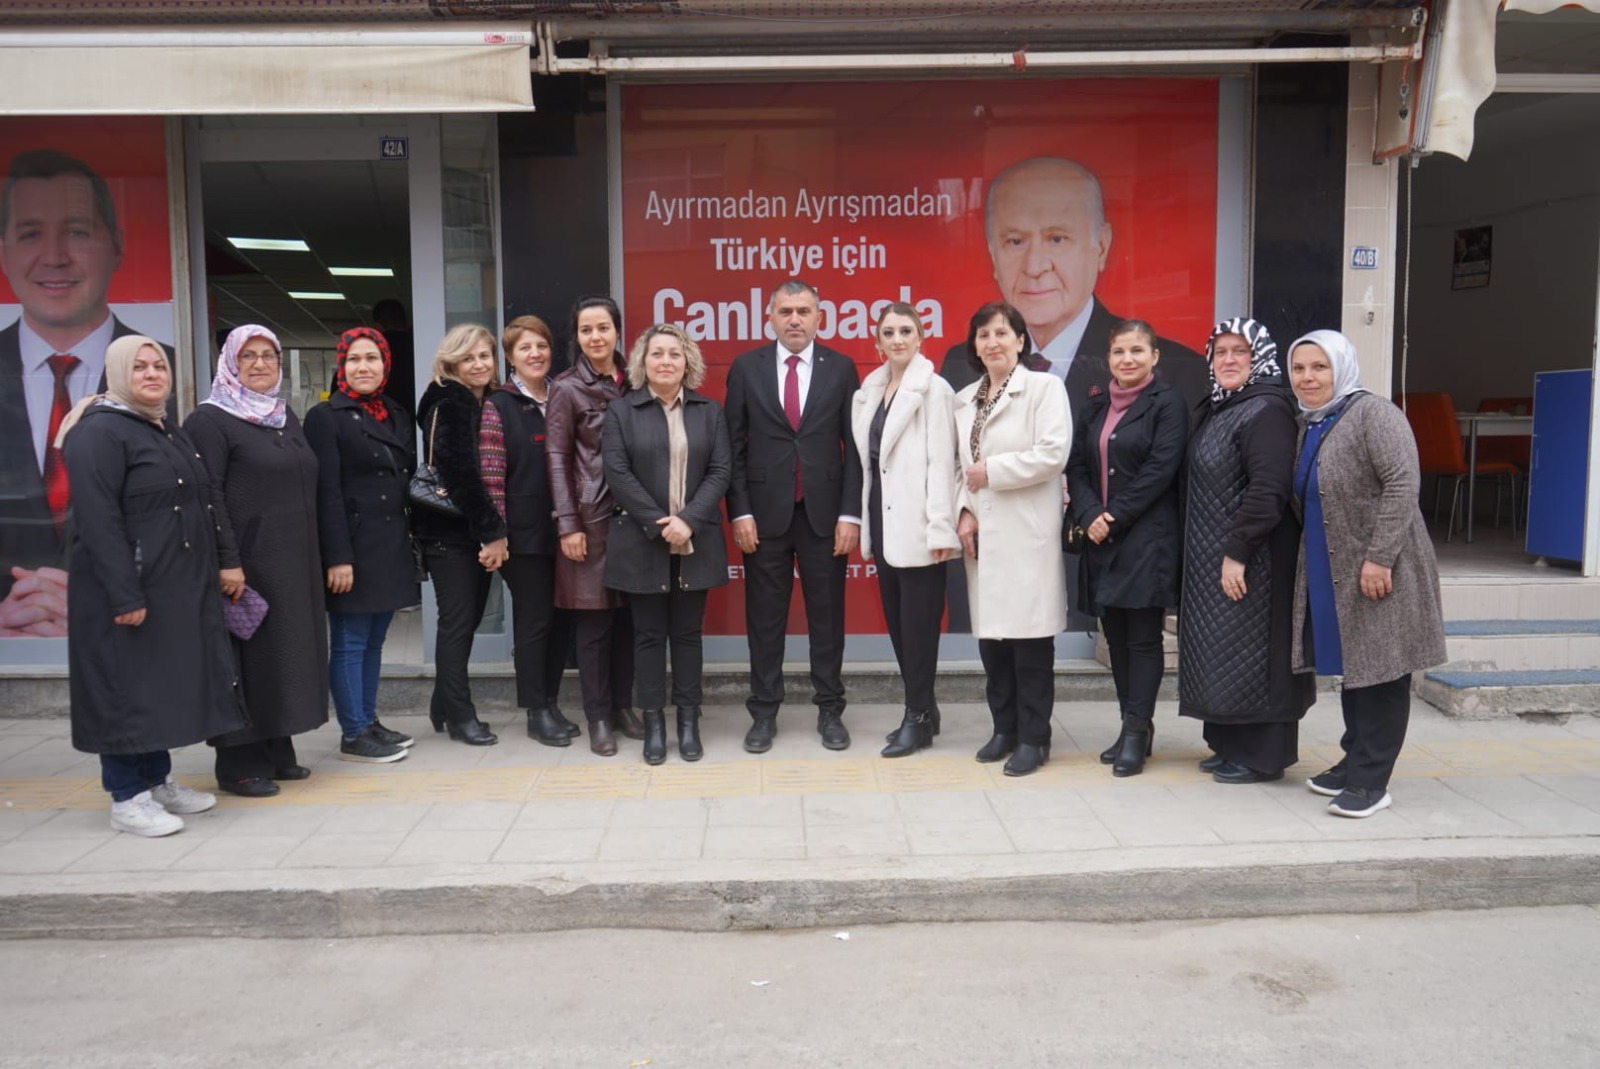 MHP İl Başkanı Burhan Mucur; 'İttifak kazanacak, Samsun kazanacak!'